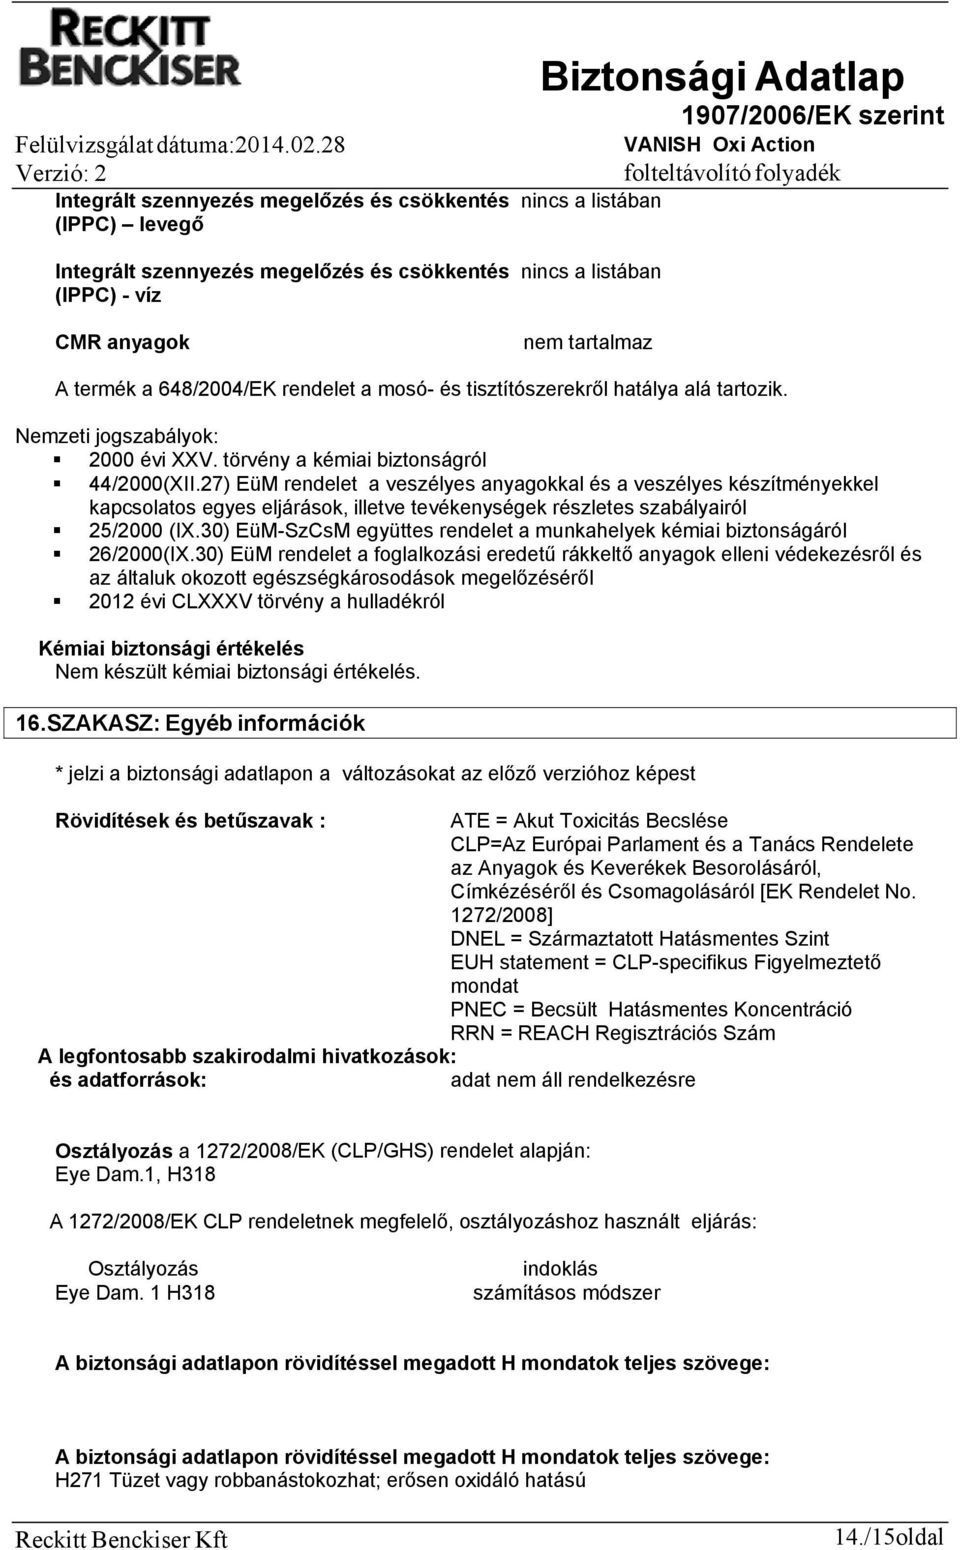 Biztonsági Adatlap 1907/2006/EK szerint VANISH Oxi Action folteltávolító  folyadék - PDF Ingyenes letöltés